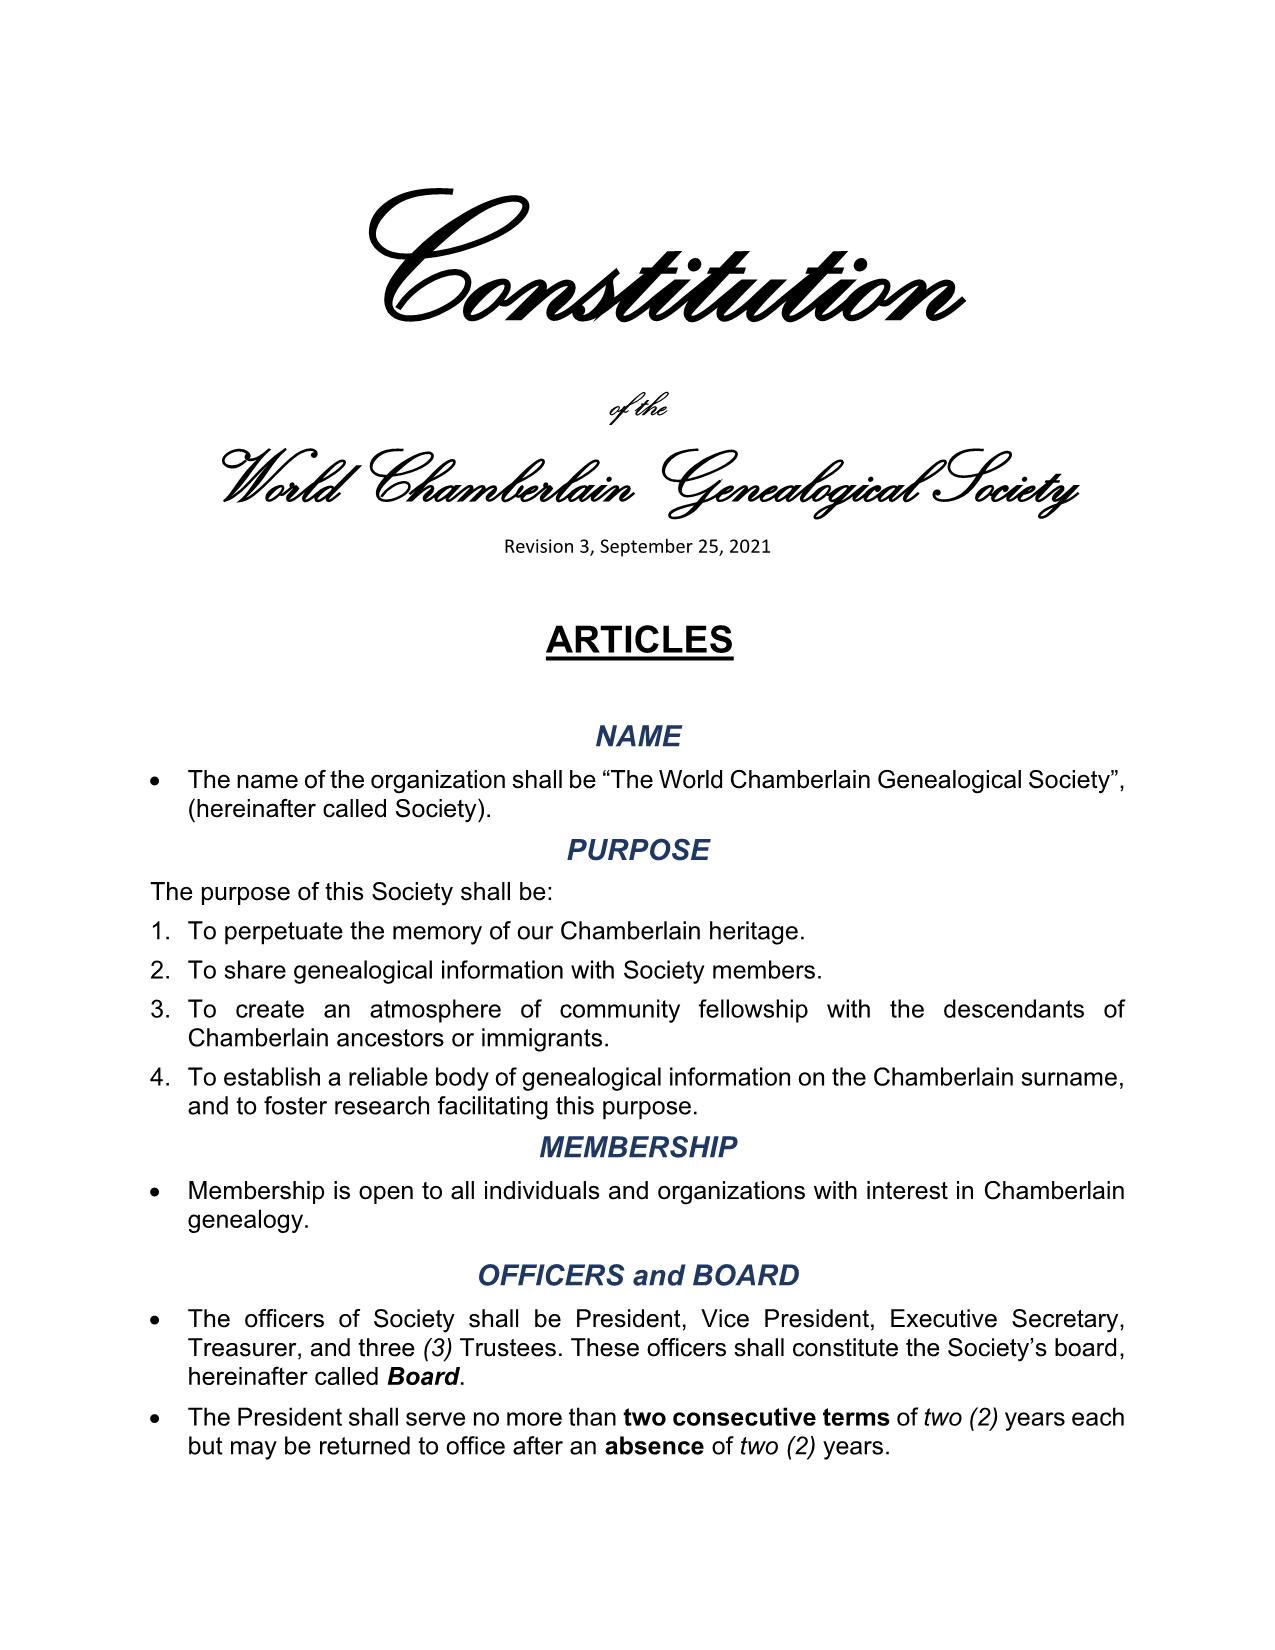 WCGS Constitution